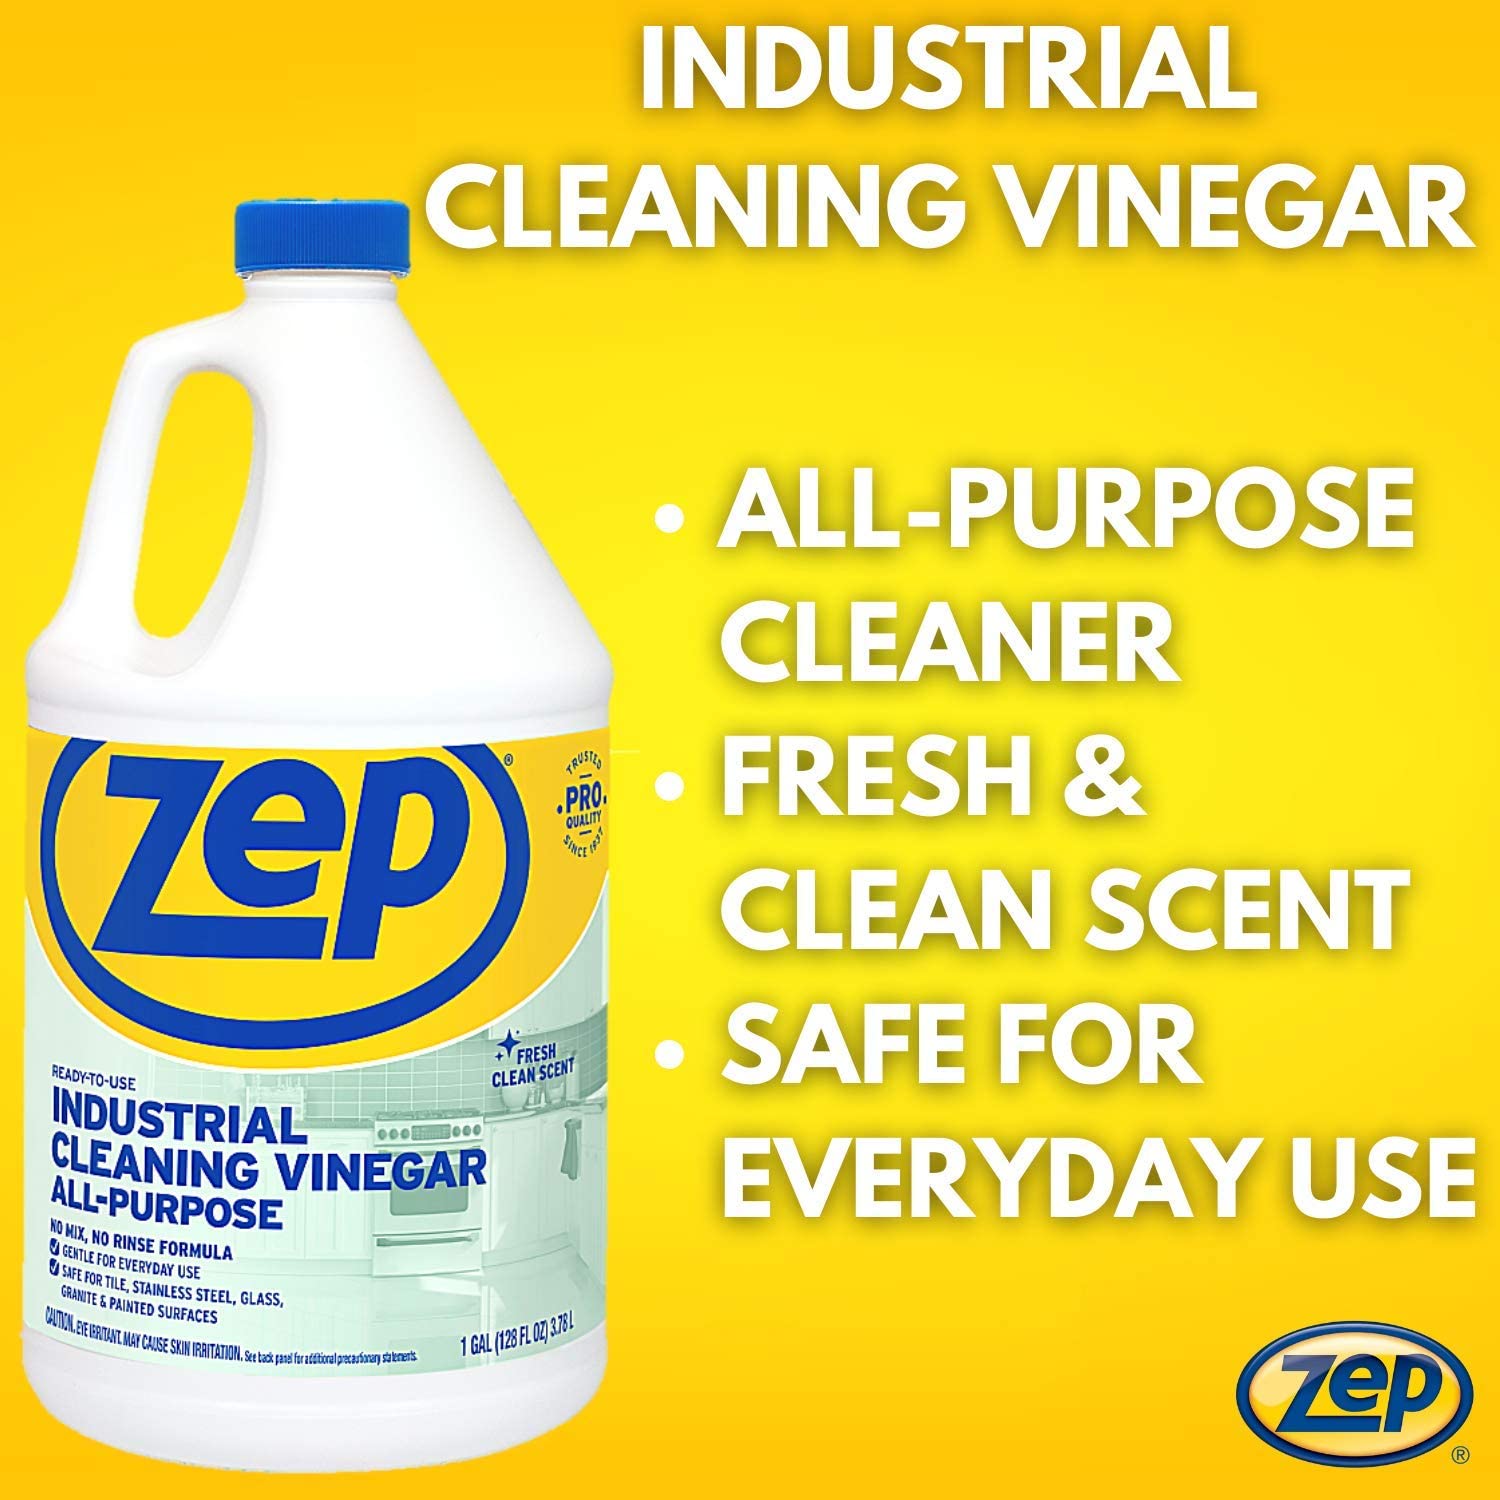 Zep Sassafras Scent Grout Cleaner and Whitener 32 oz Liquid